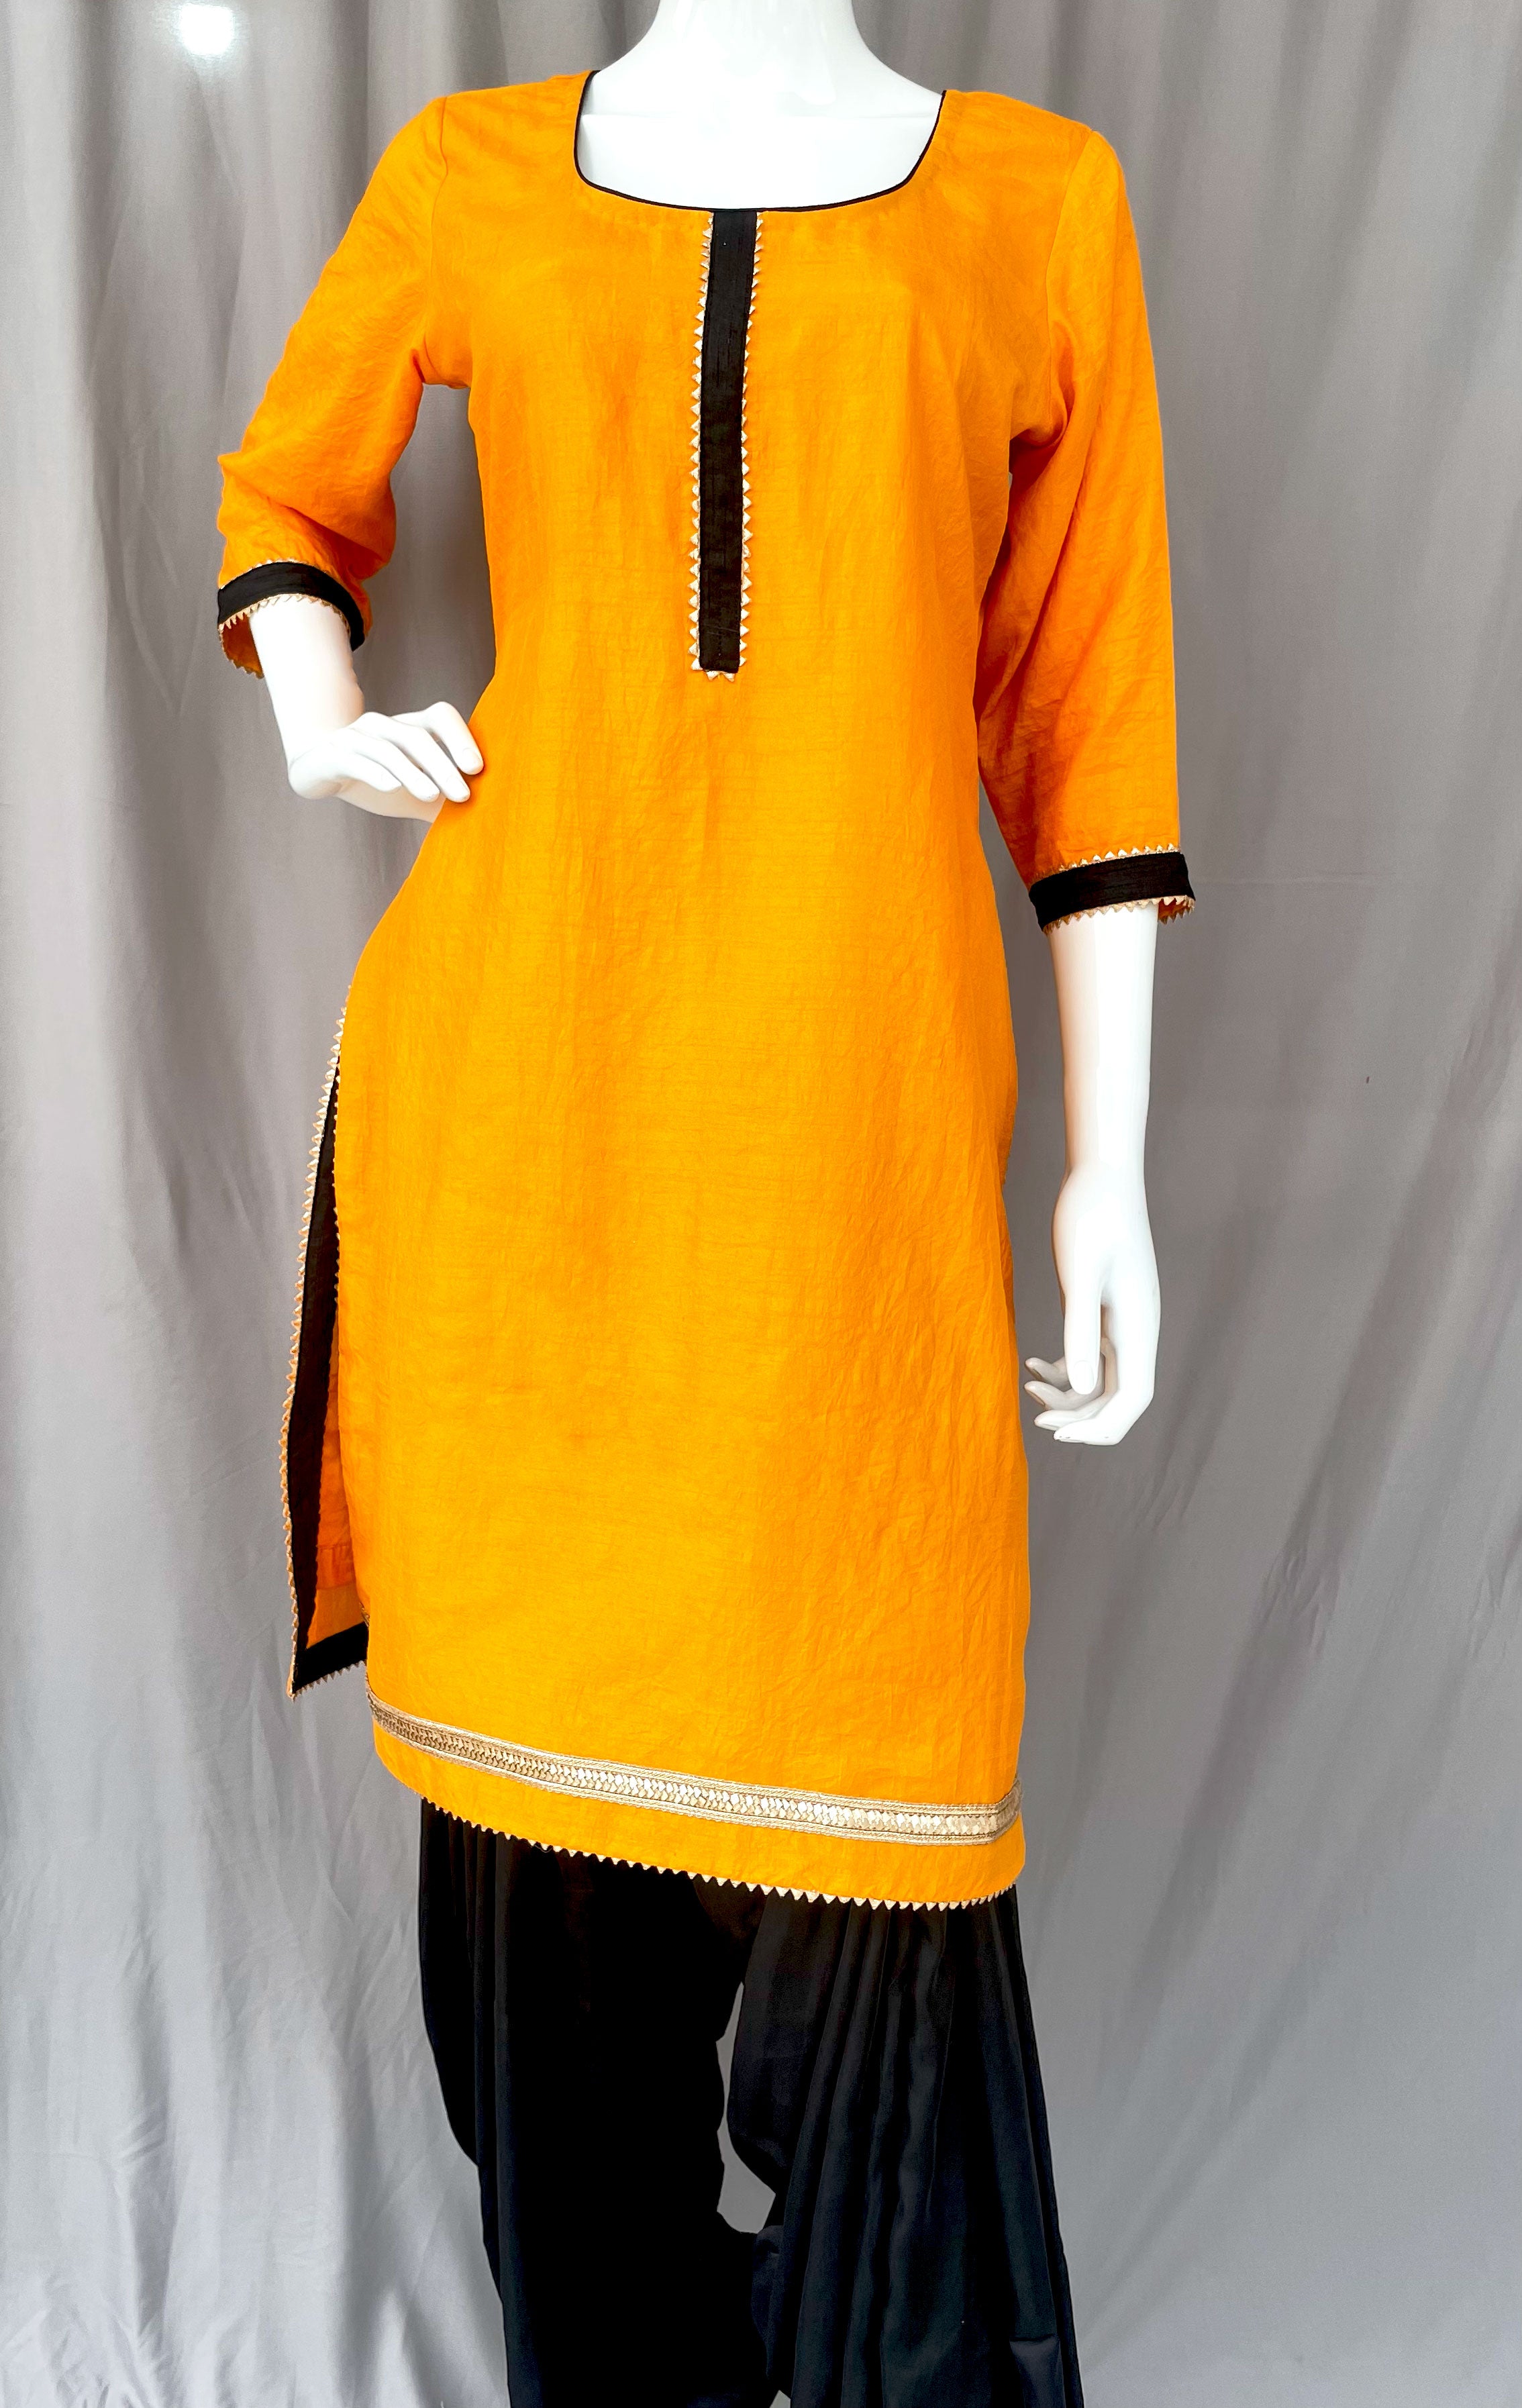 Phulkari Top | Phulkari Dress | How To Style Phulkari | HerZindagi